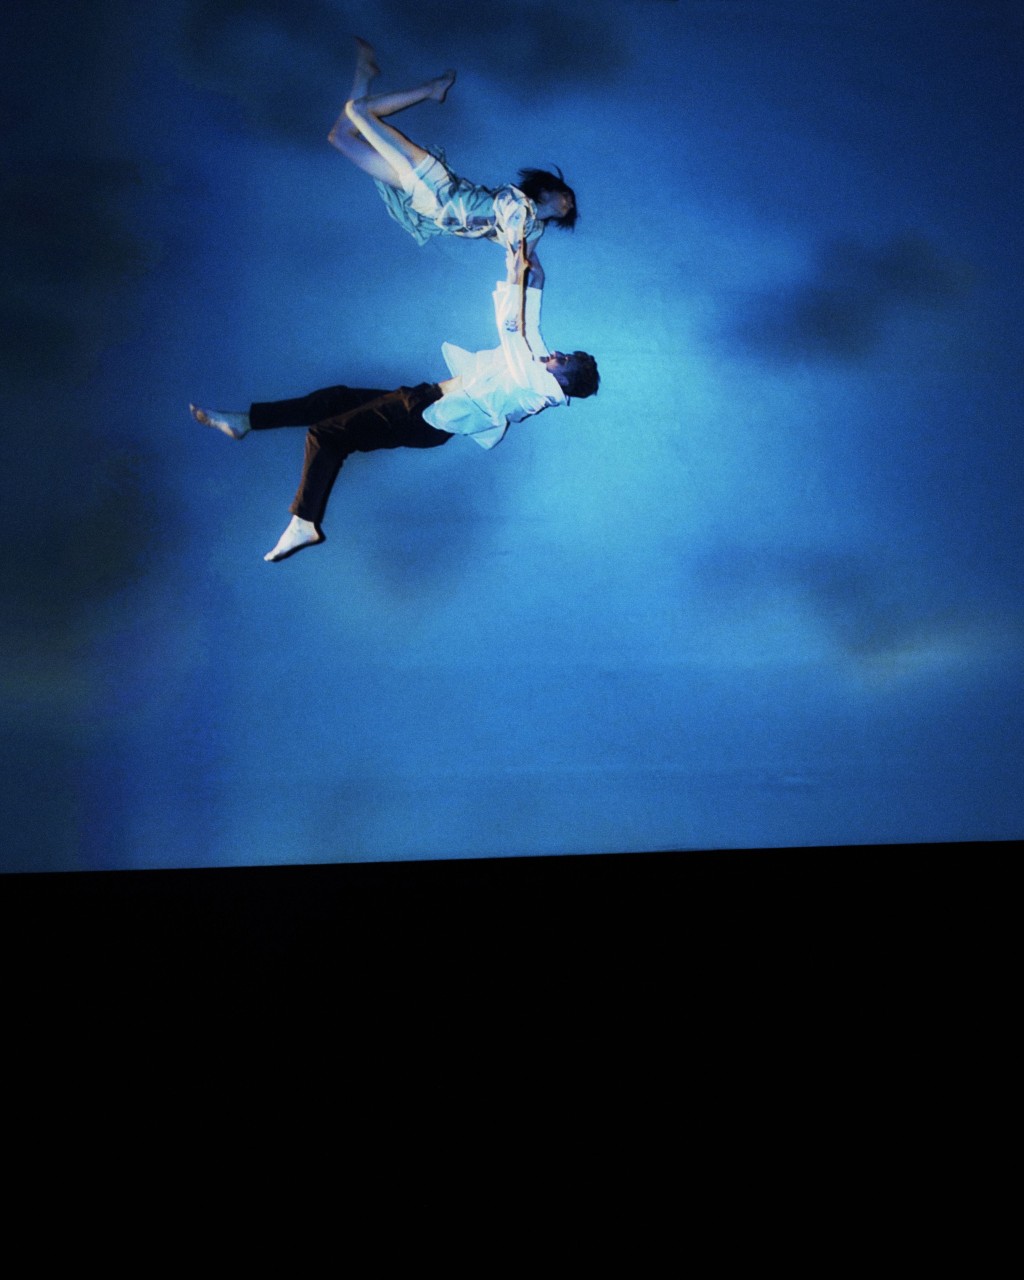 饰演情侣的舞者在蓝色空中表演现场舞蹈。